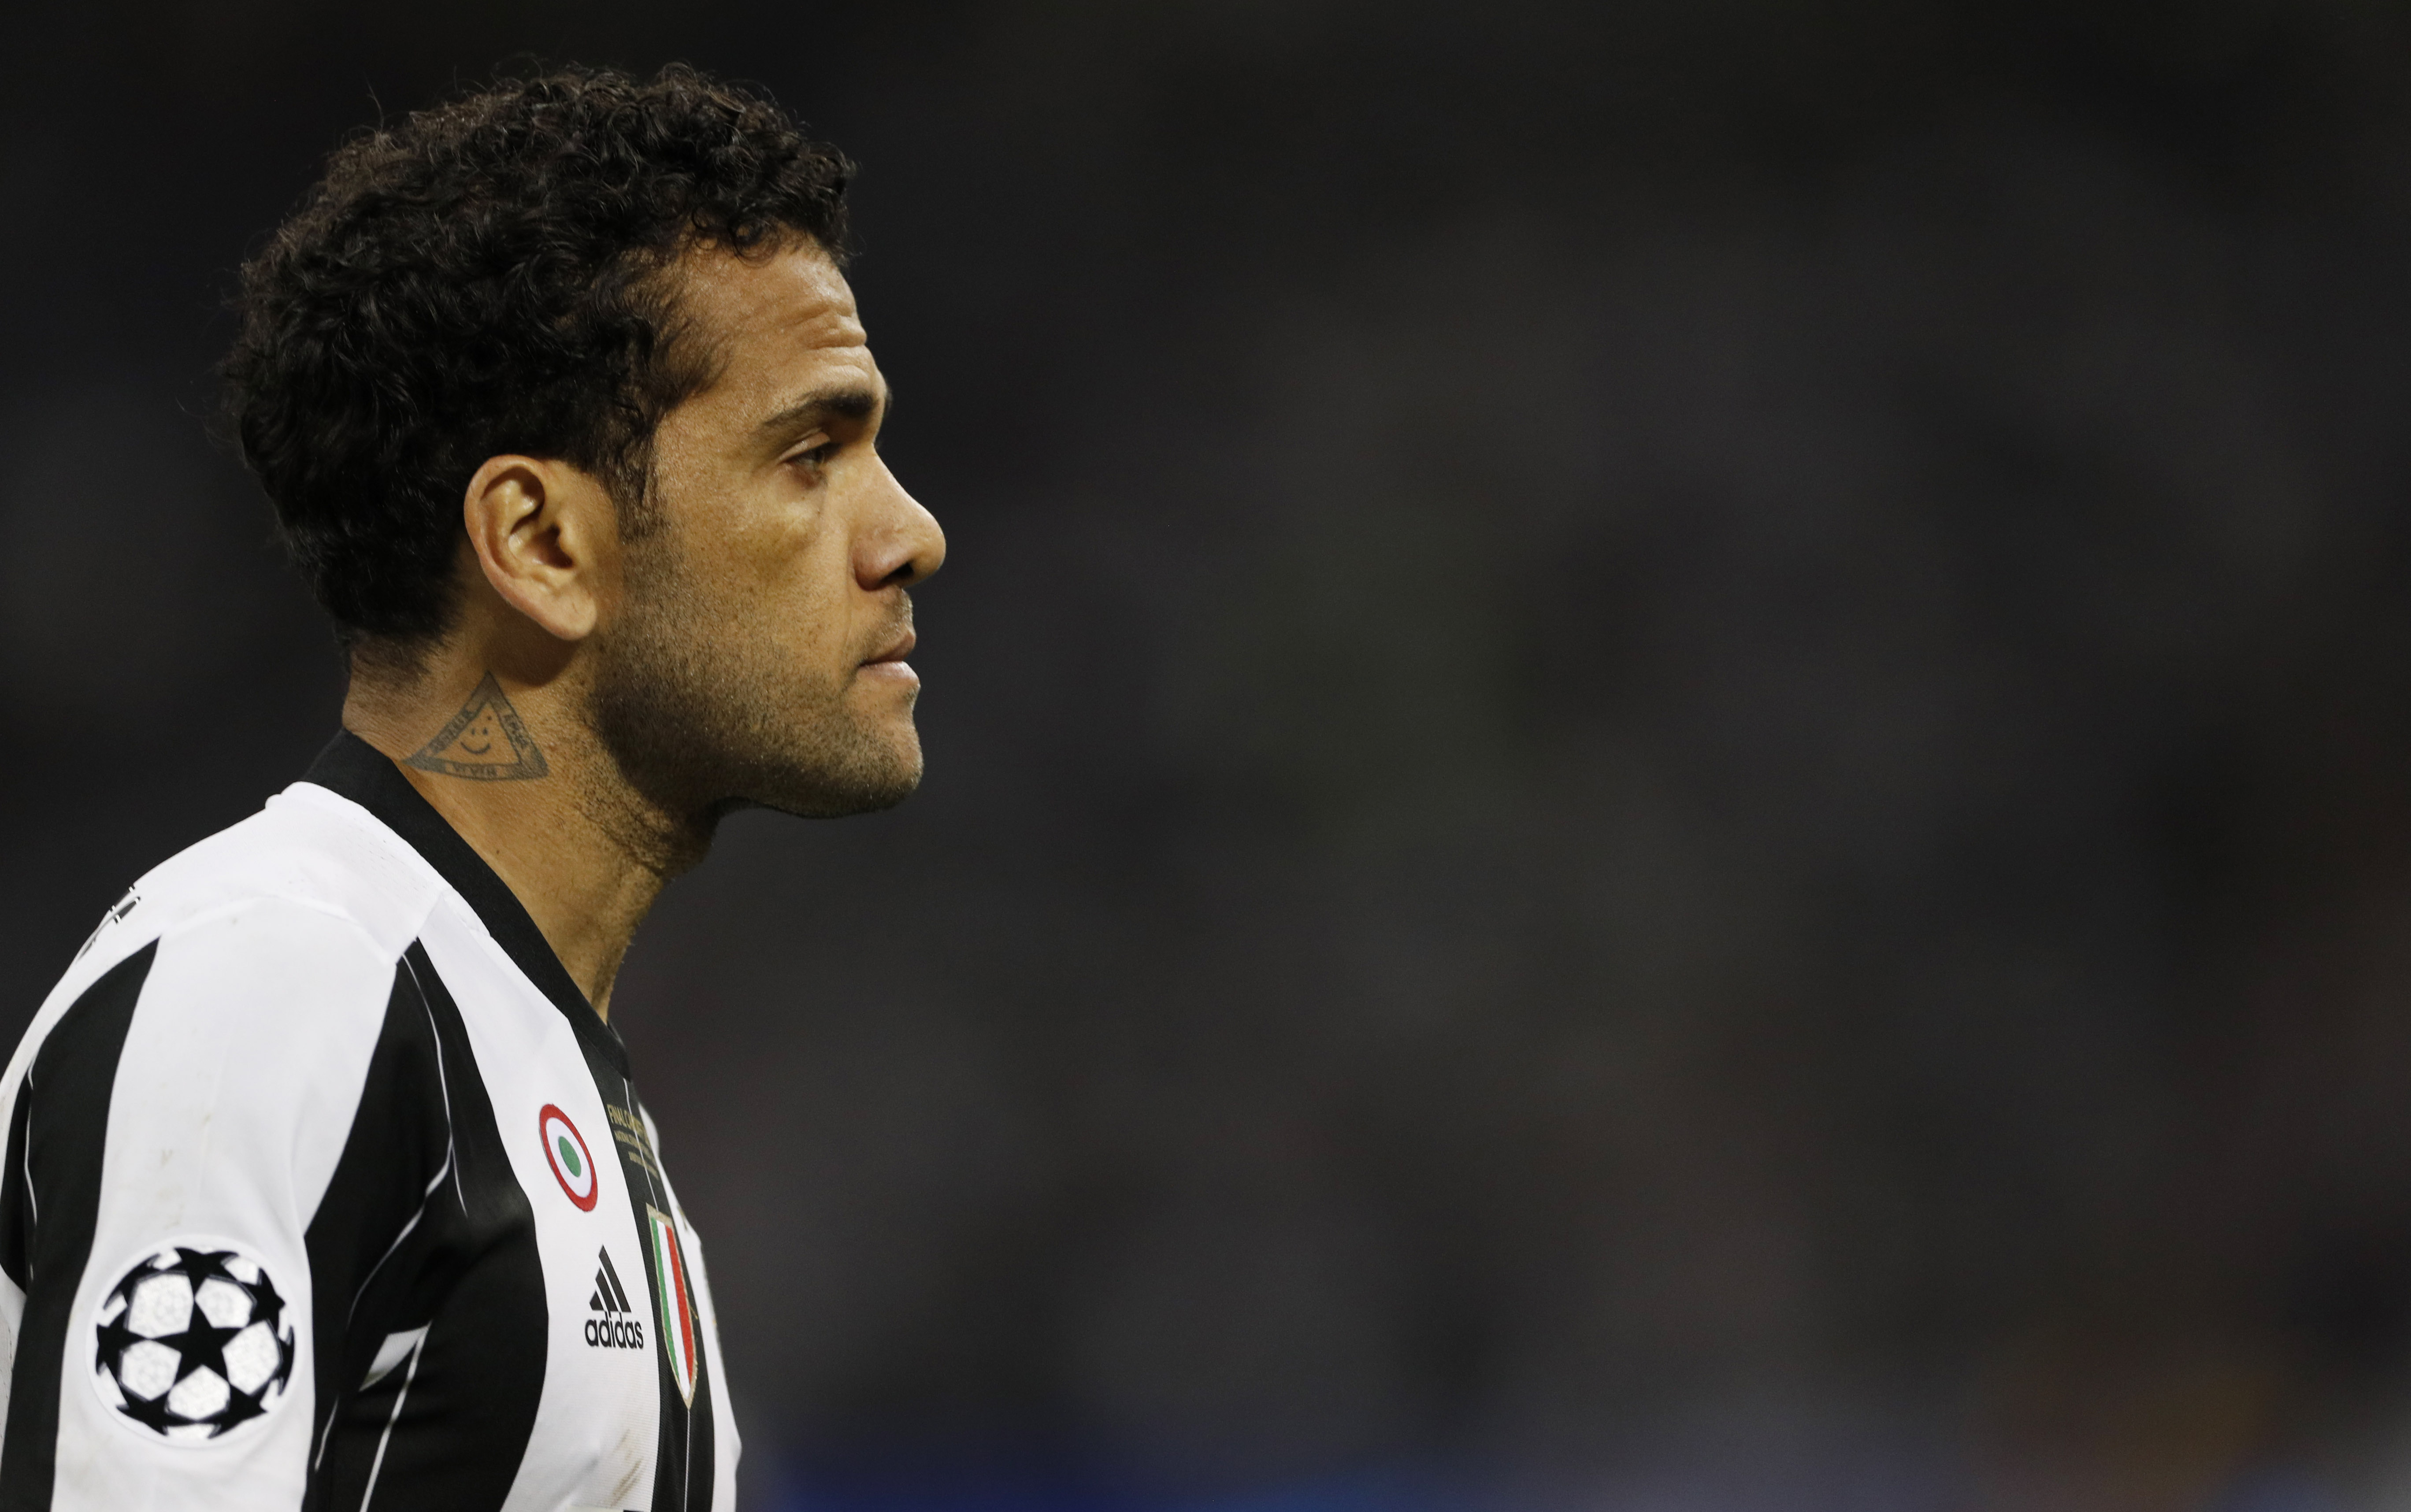 Dani Alves se despide de la Juventus y dice que nunca quiso ofender hinchada